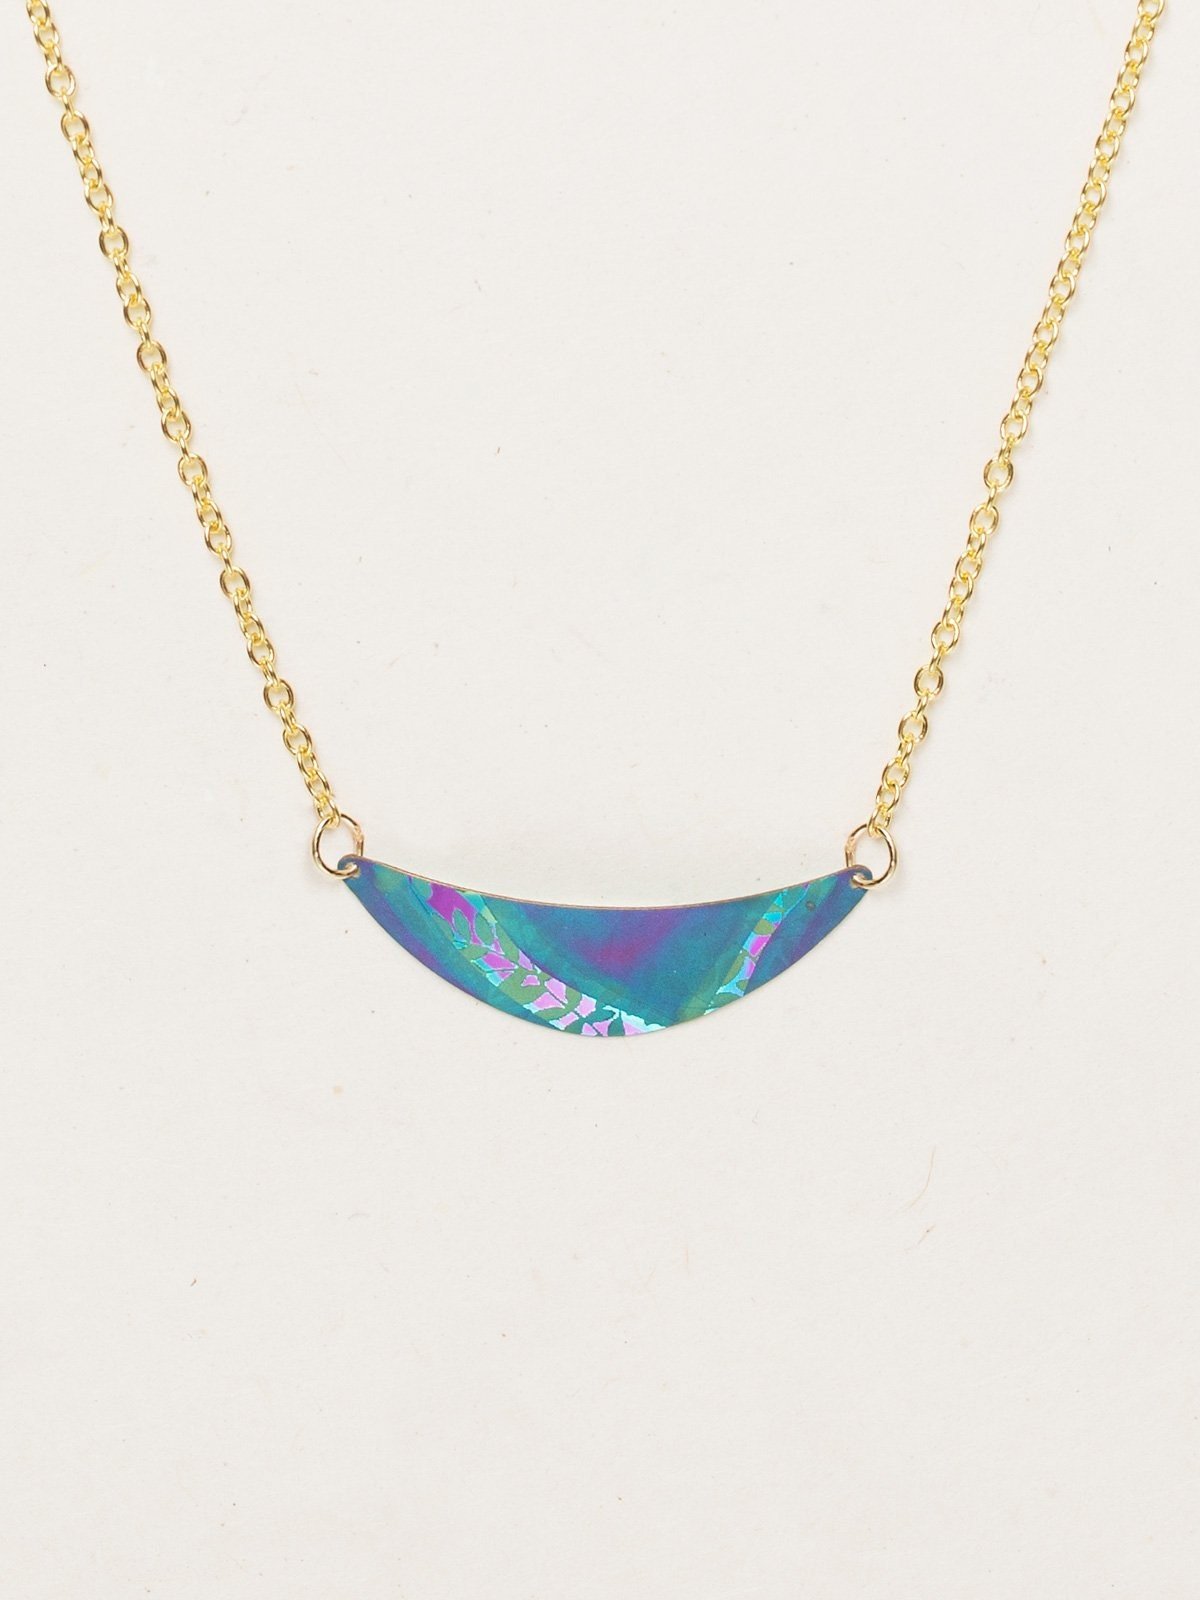 Holly Yashi Selena Necklace - Turquoise/Purple    